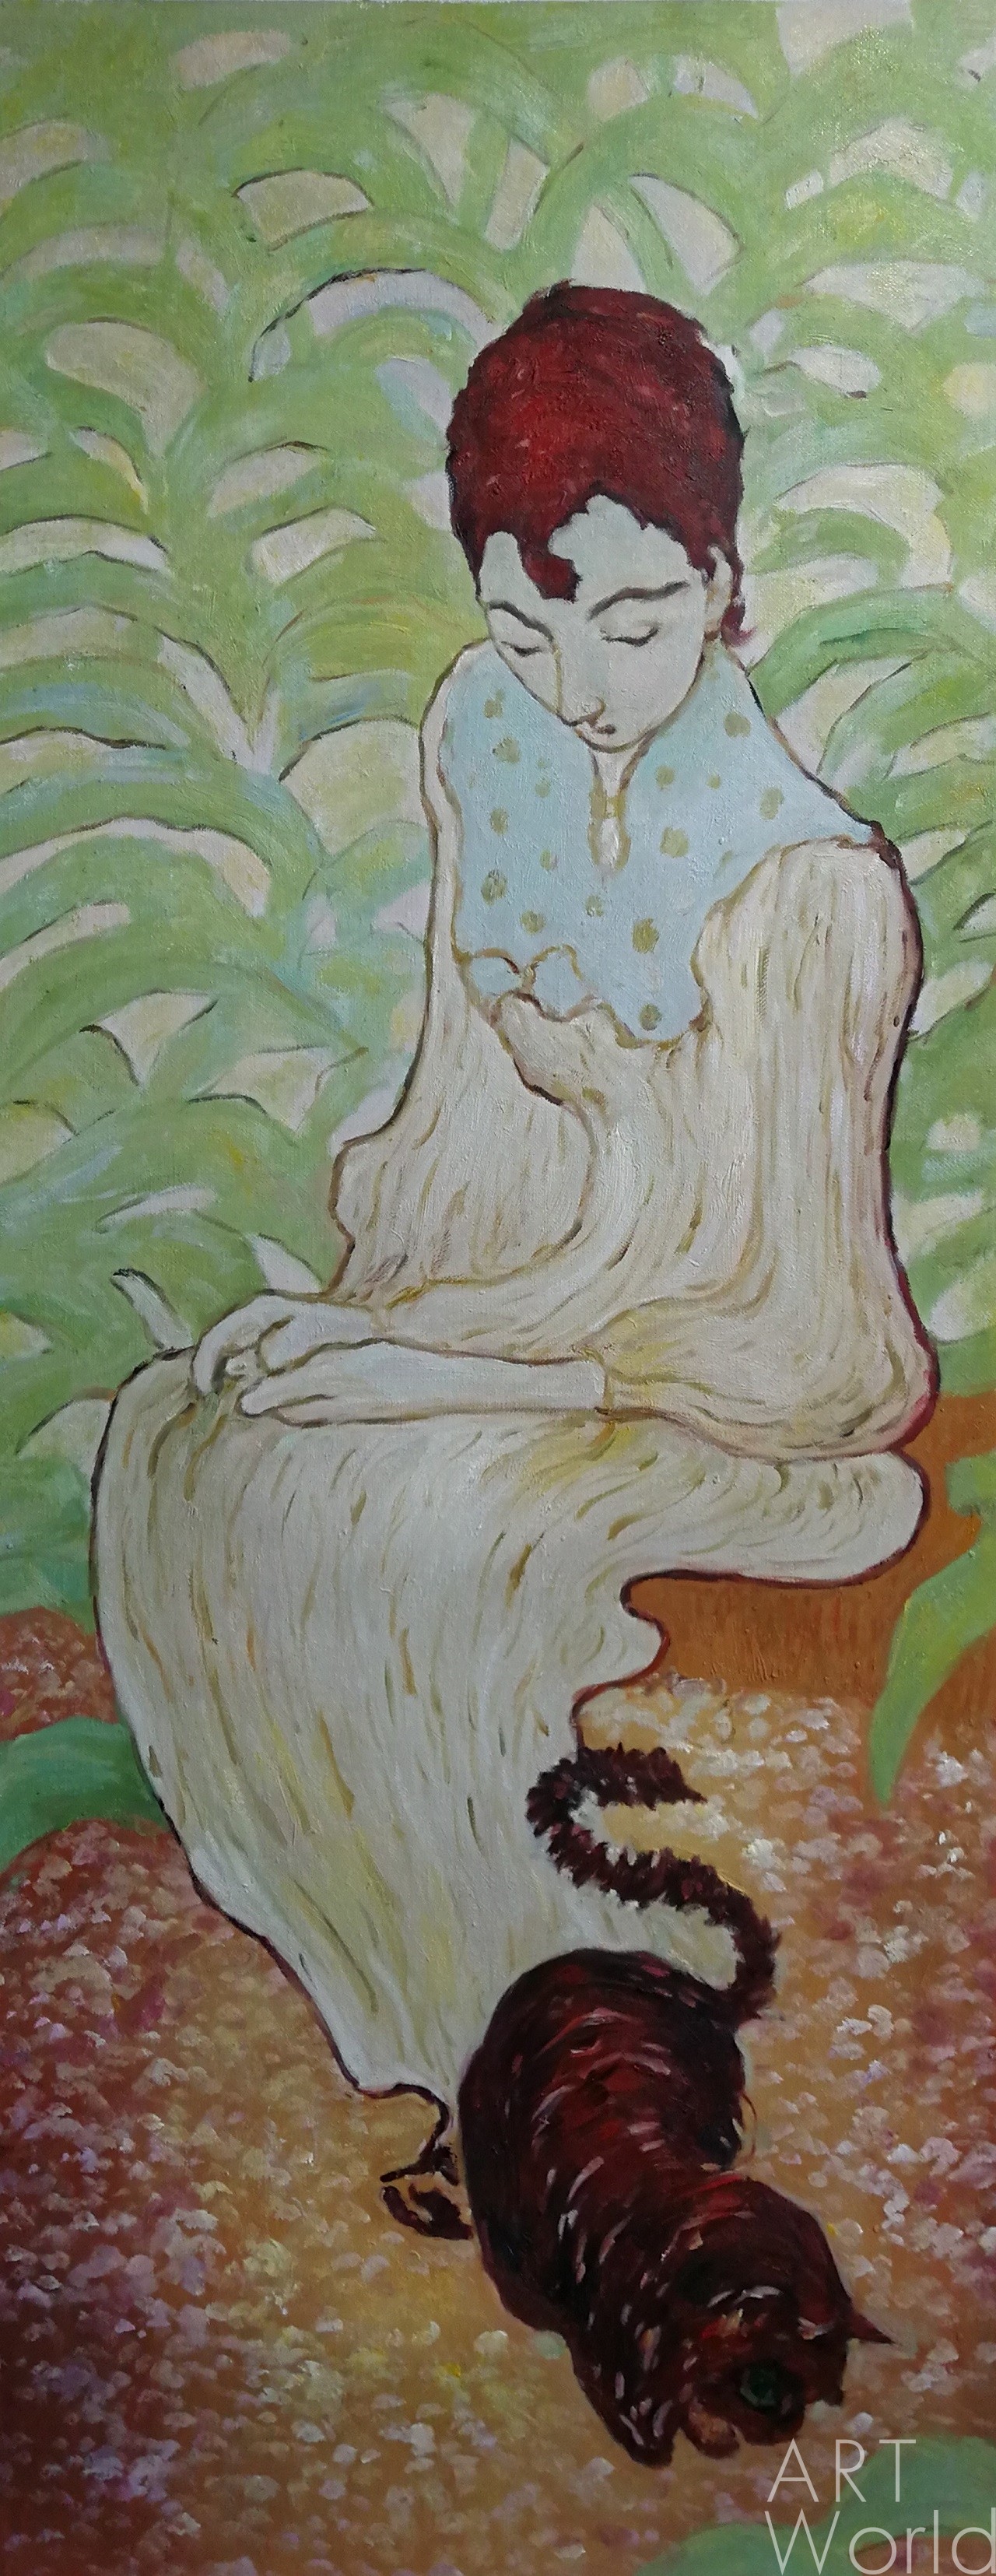 картина масло холст Копия картины Пьера Боннара "Сидящая женщина с кошкой", художник С. Камский, Камский Савелий, LegacyArt Артворлд.ру